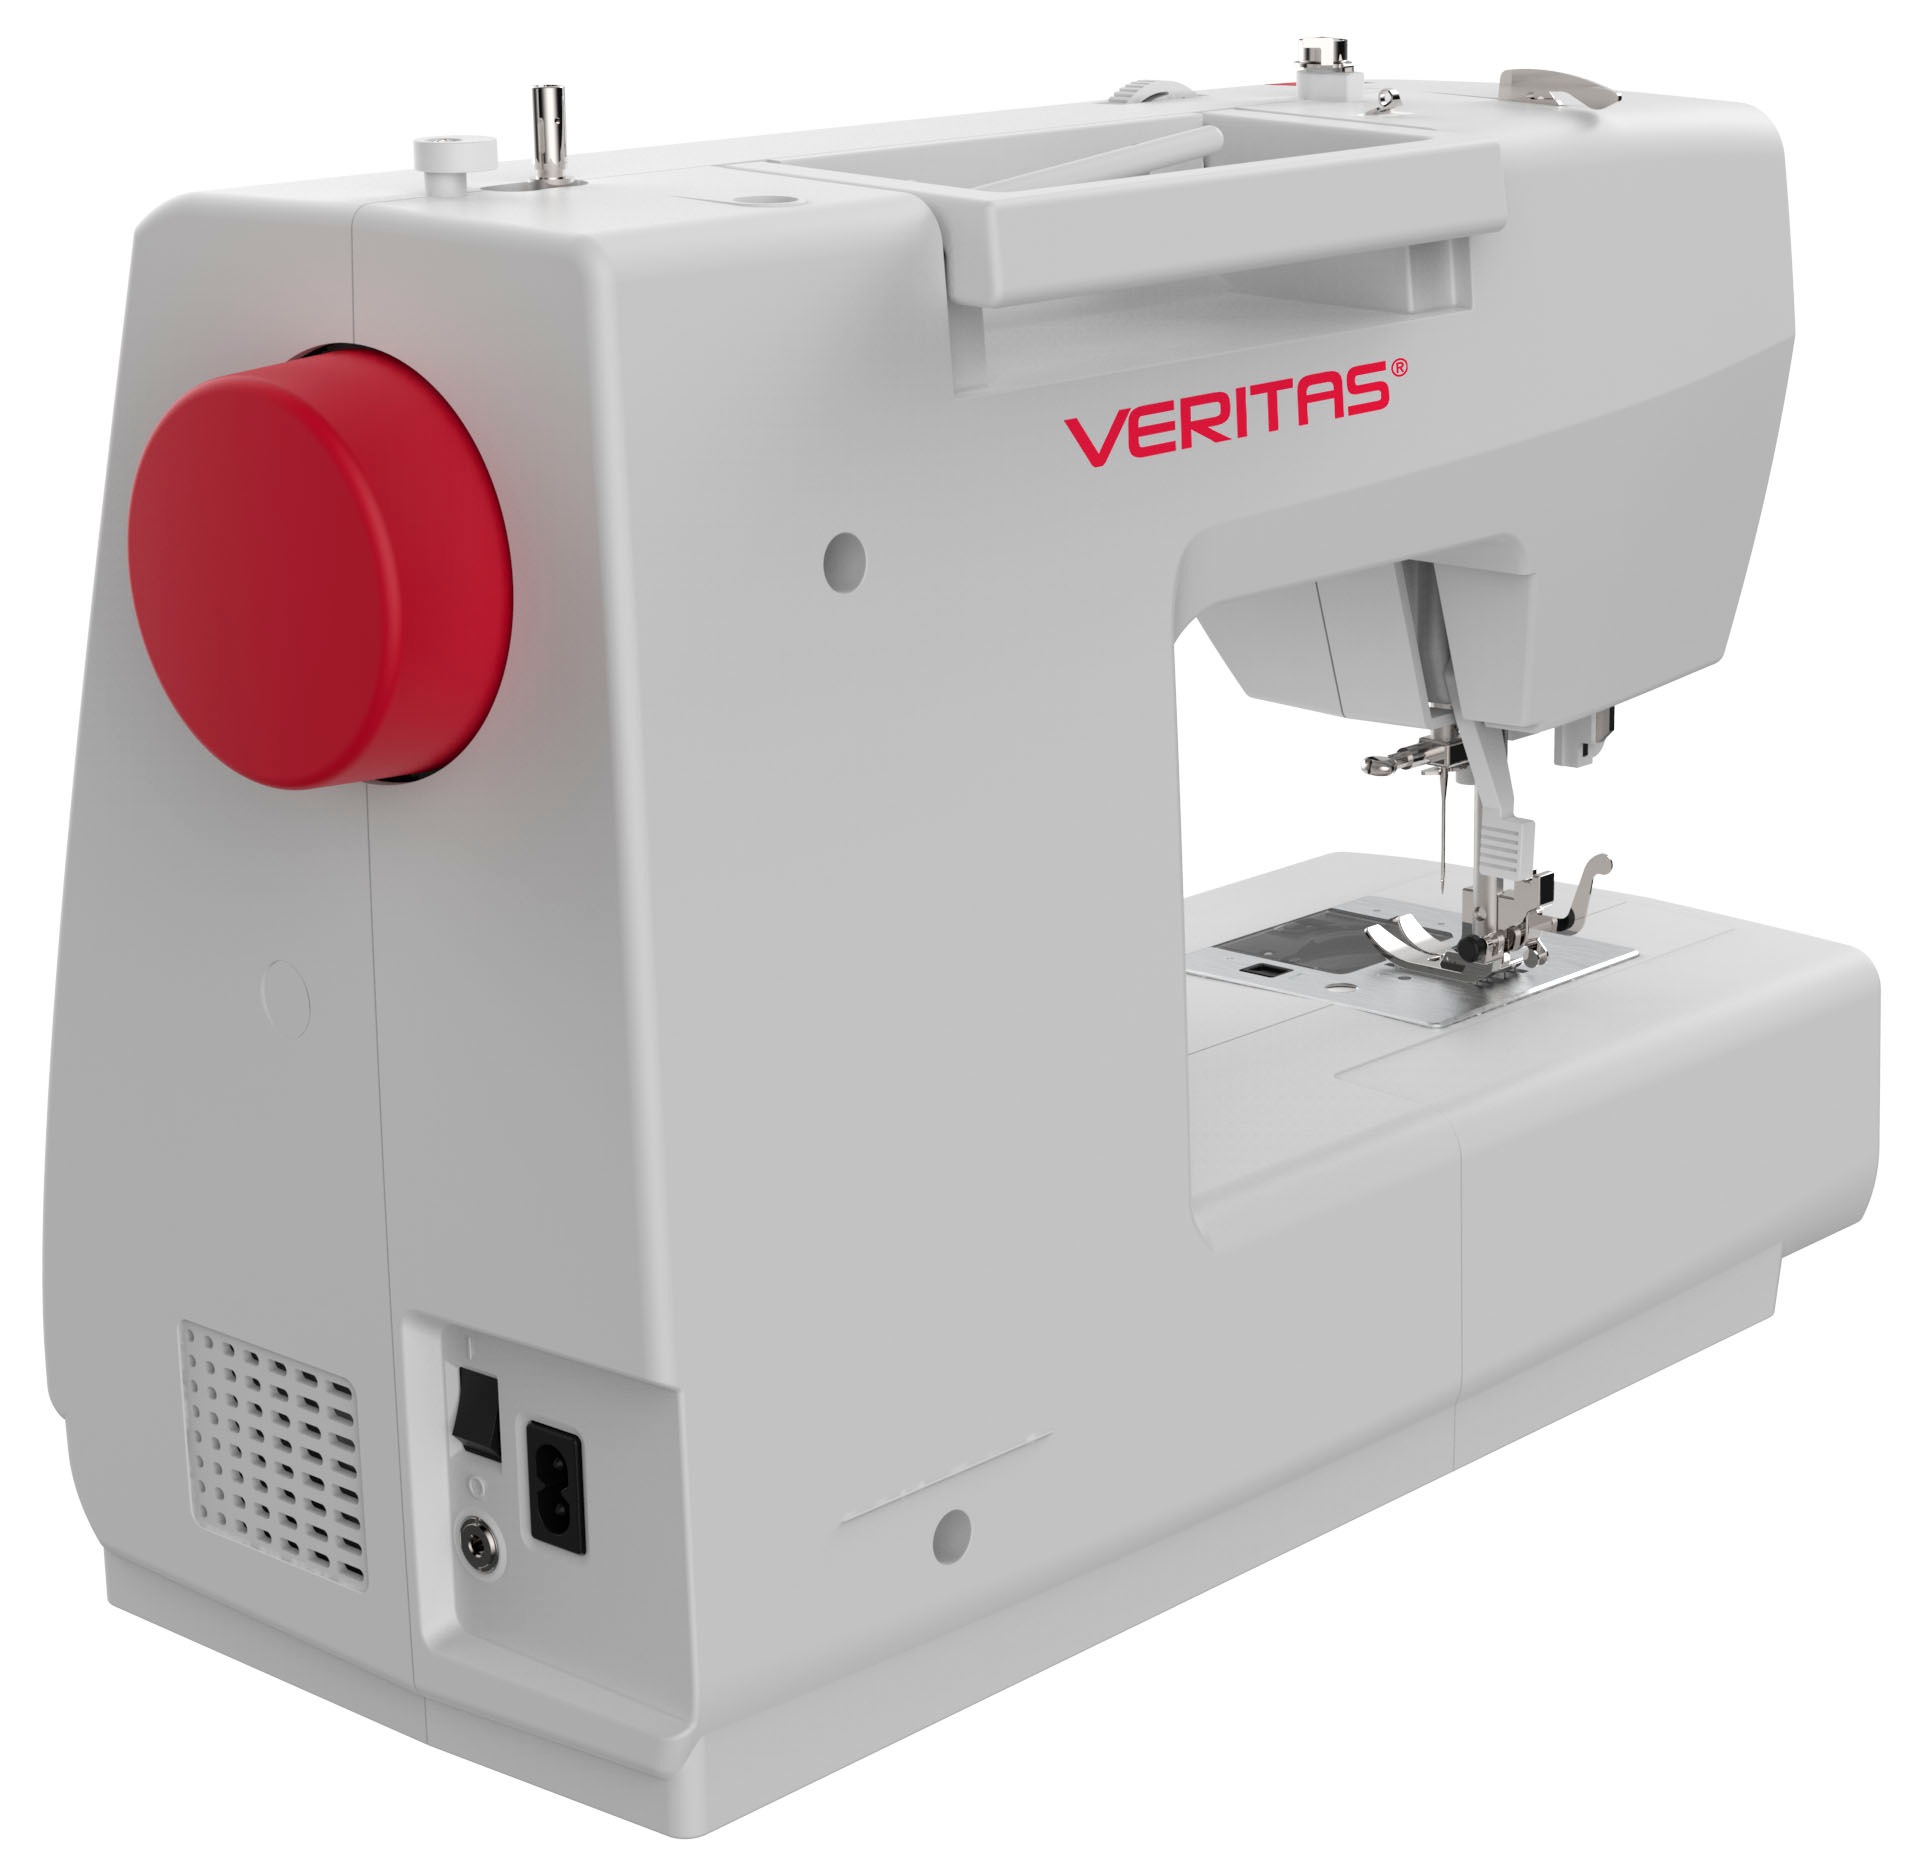 Veritas Computer-Nähmaschine »Veritas Claire«, 197 Programme, Modernste Technologie für Näharbeiten